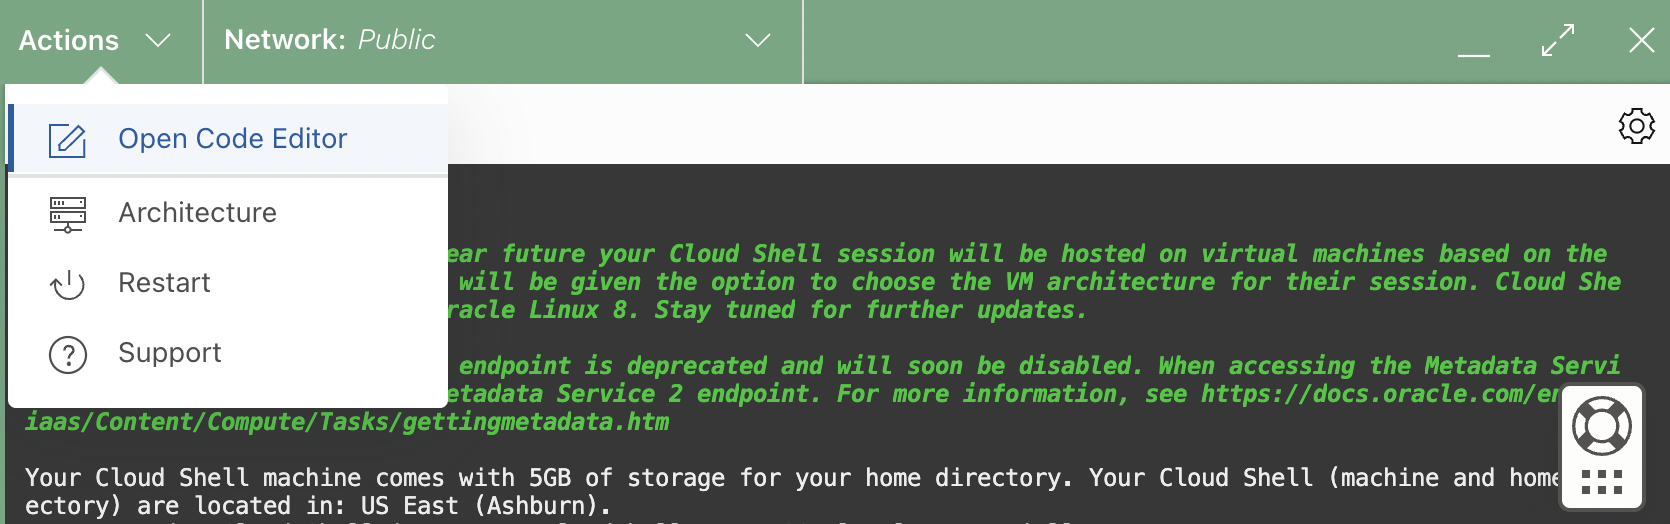 Cloud Shell-Architektur - Aktionsmenü